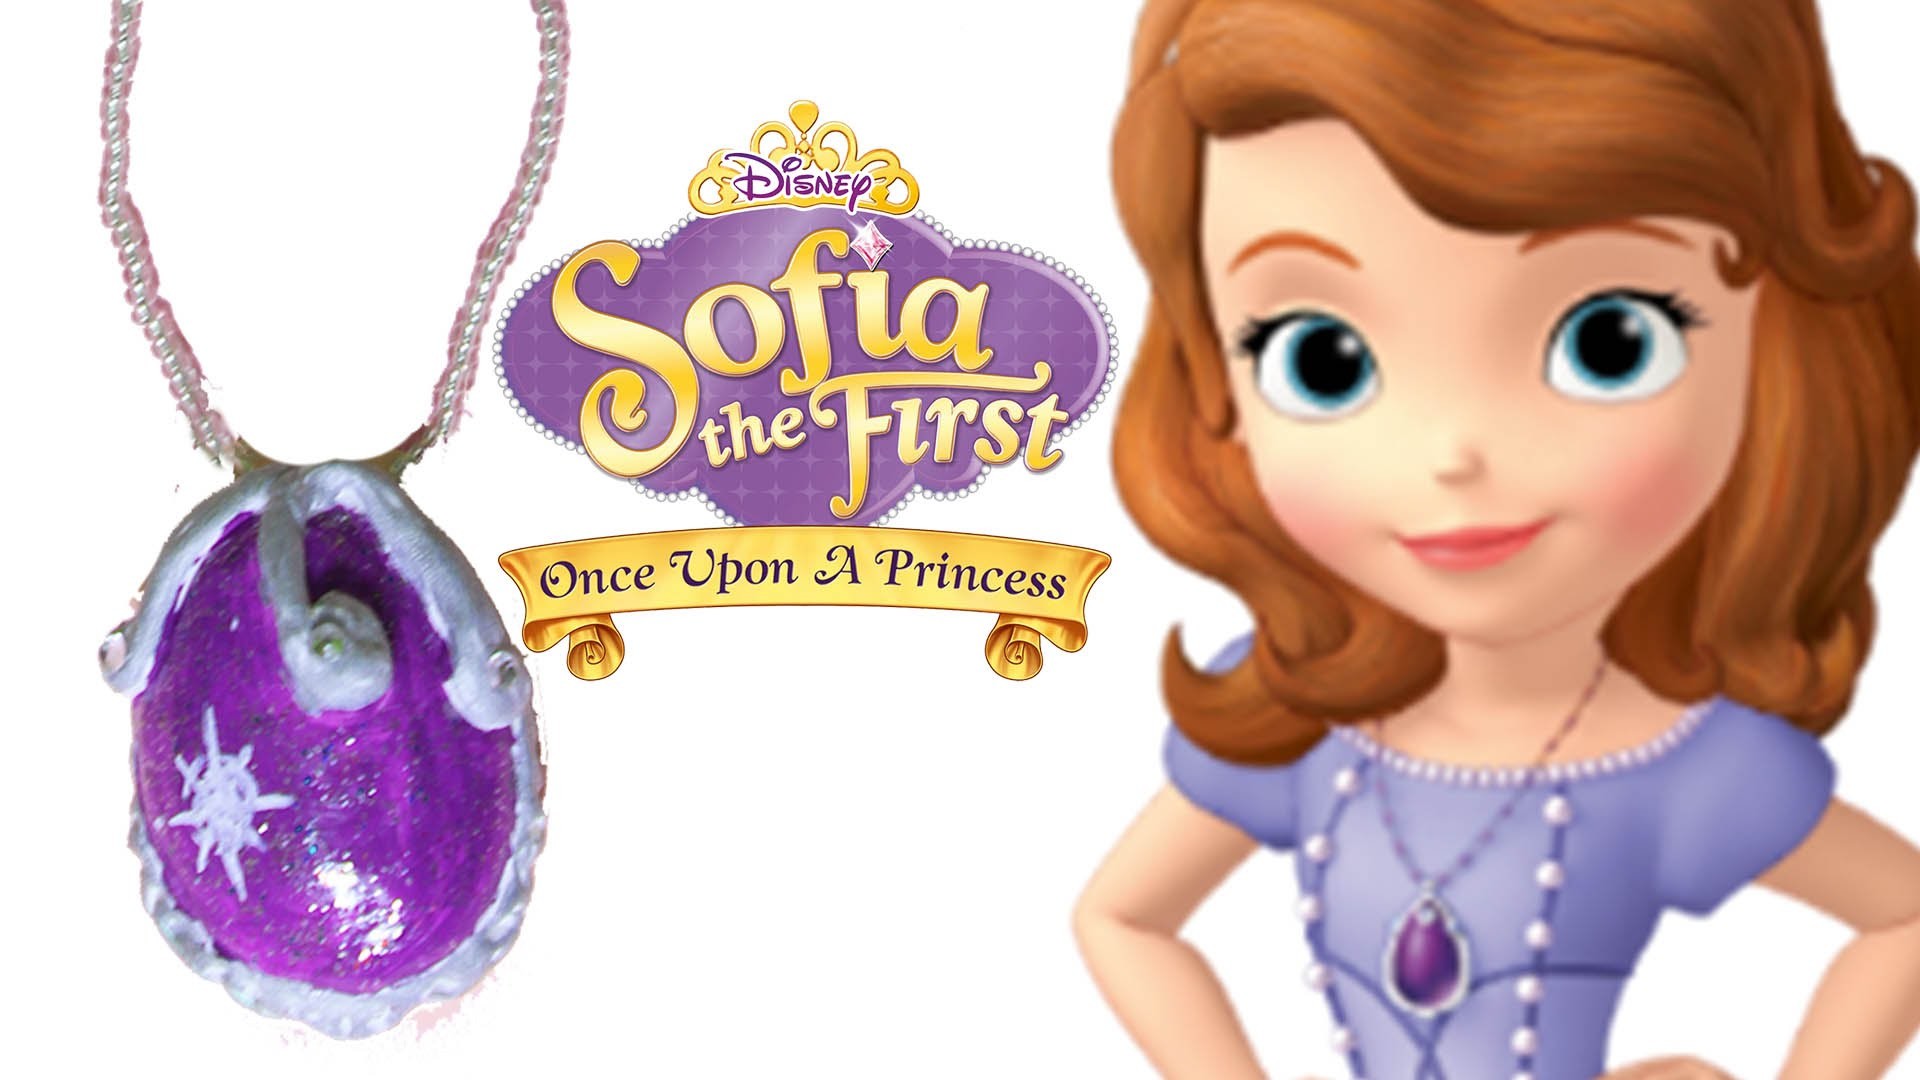 Princesita Sofía | Como Hacer el Amuleto | Disney | Boya Boya Pinta Pinta | Cómo Dibujar